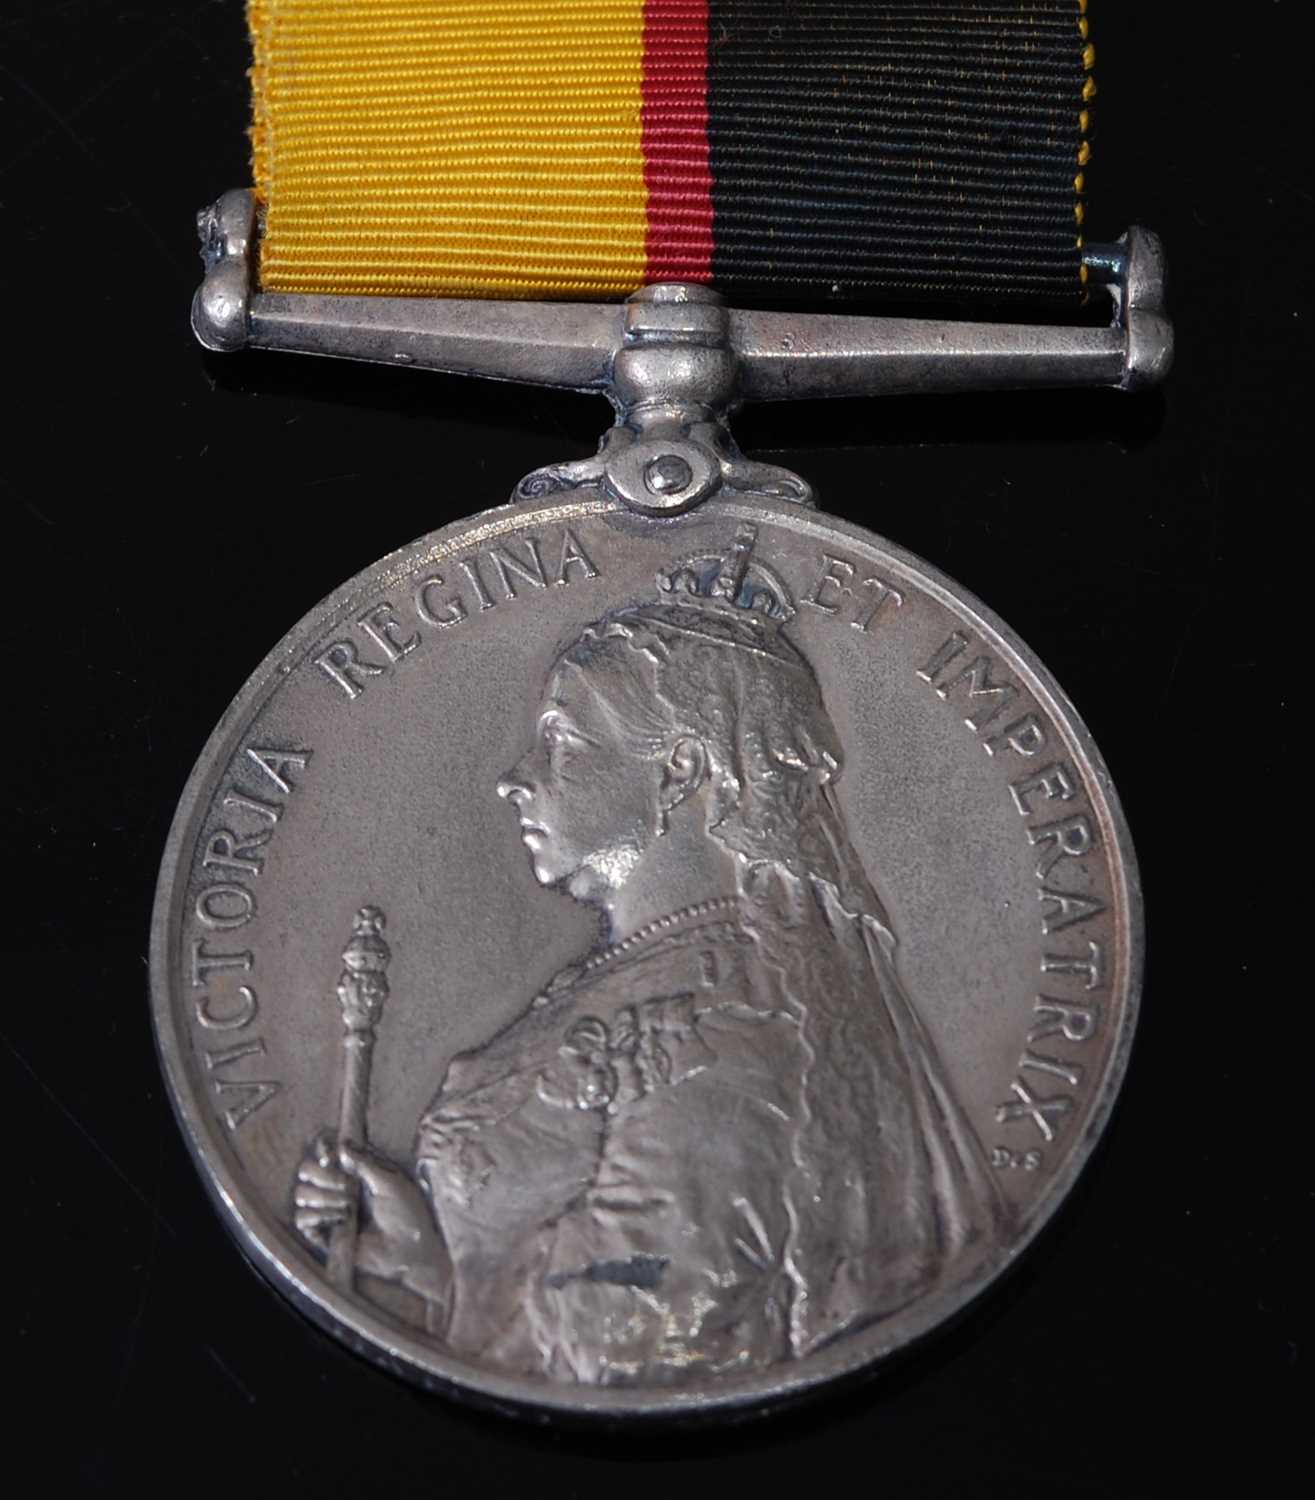 Lot 52 - A Queen's Sudan medal